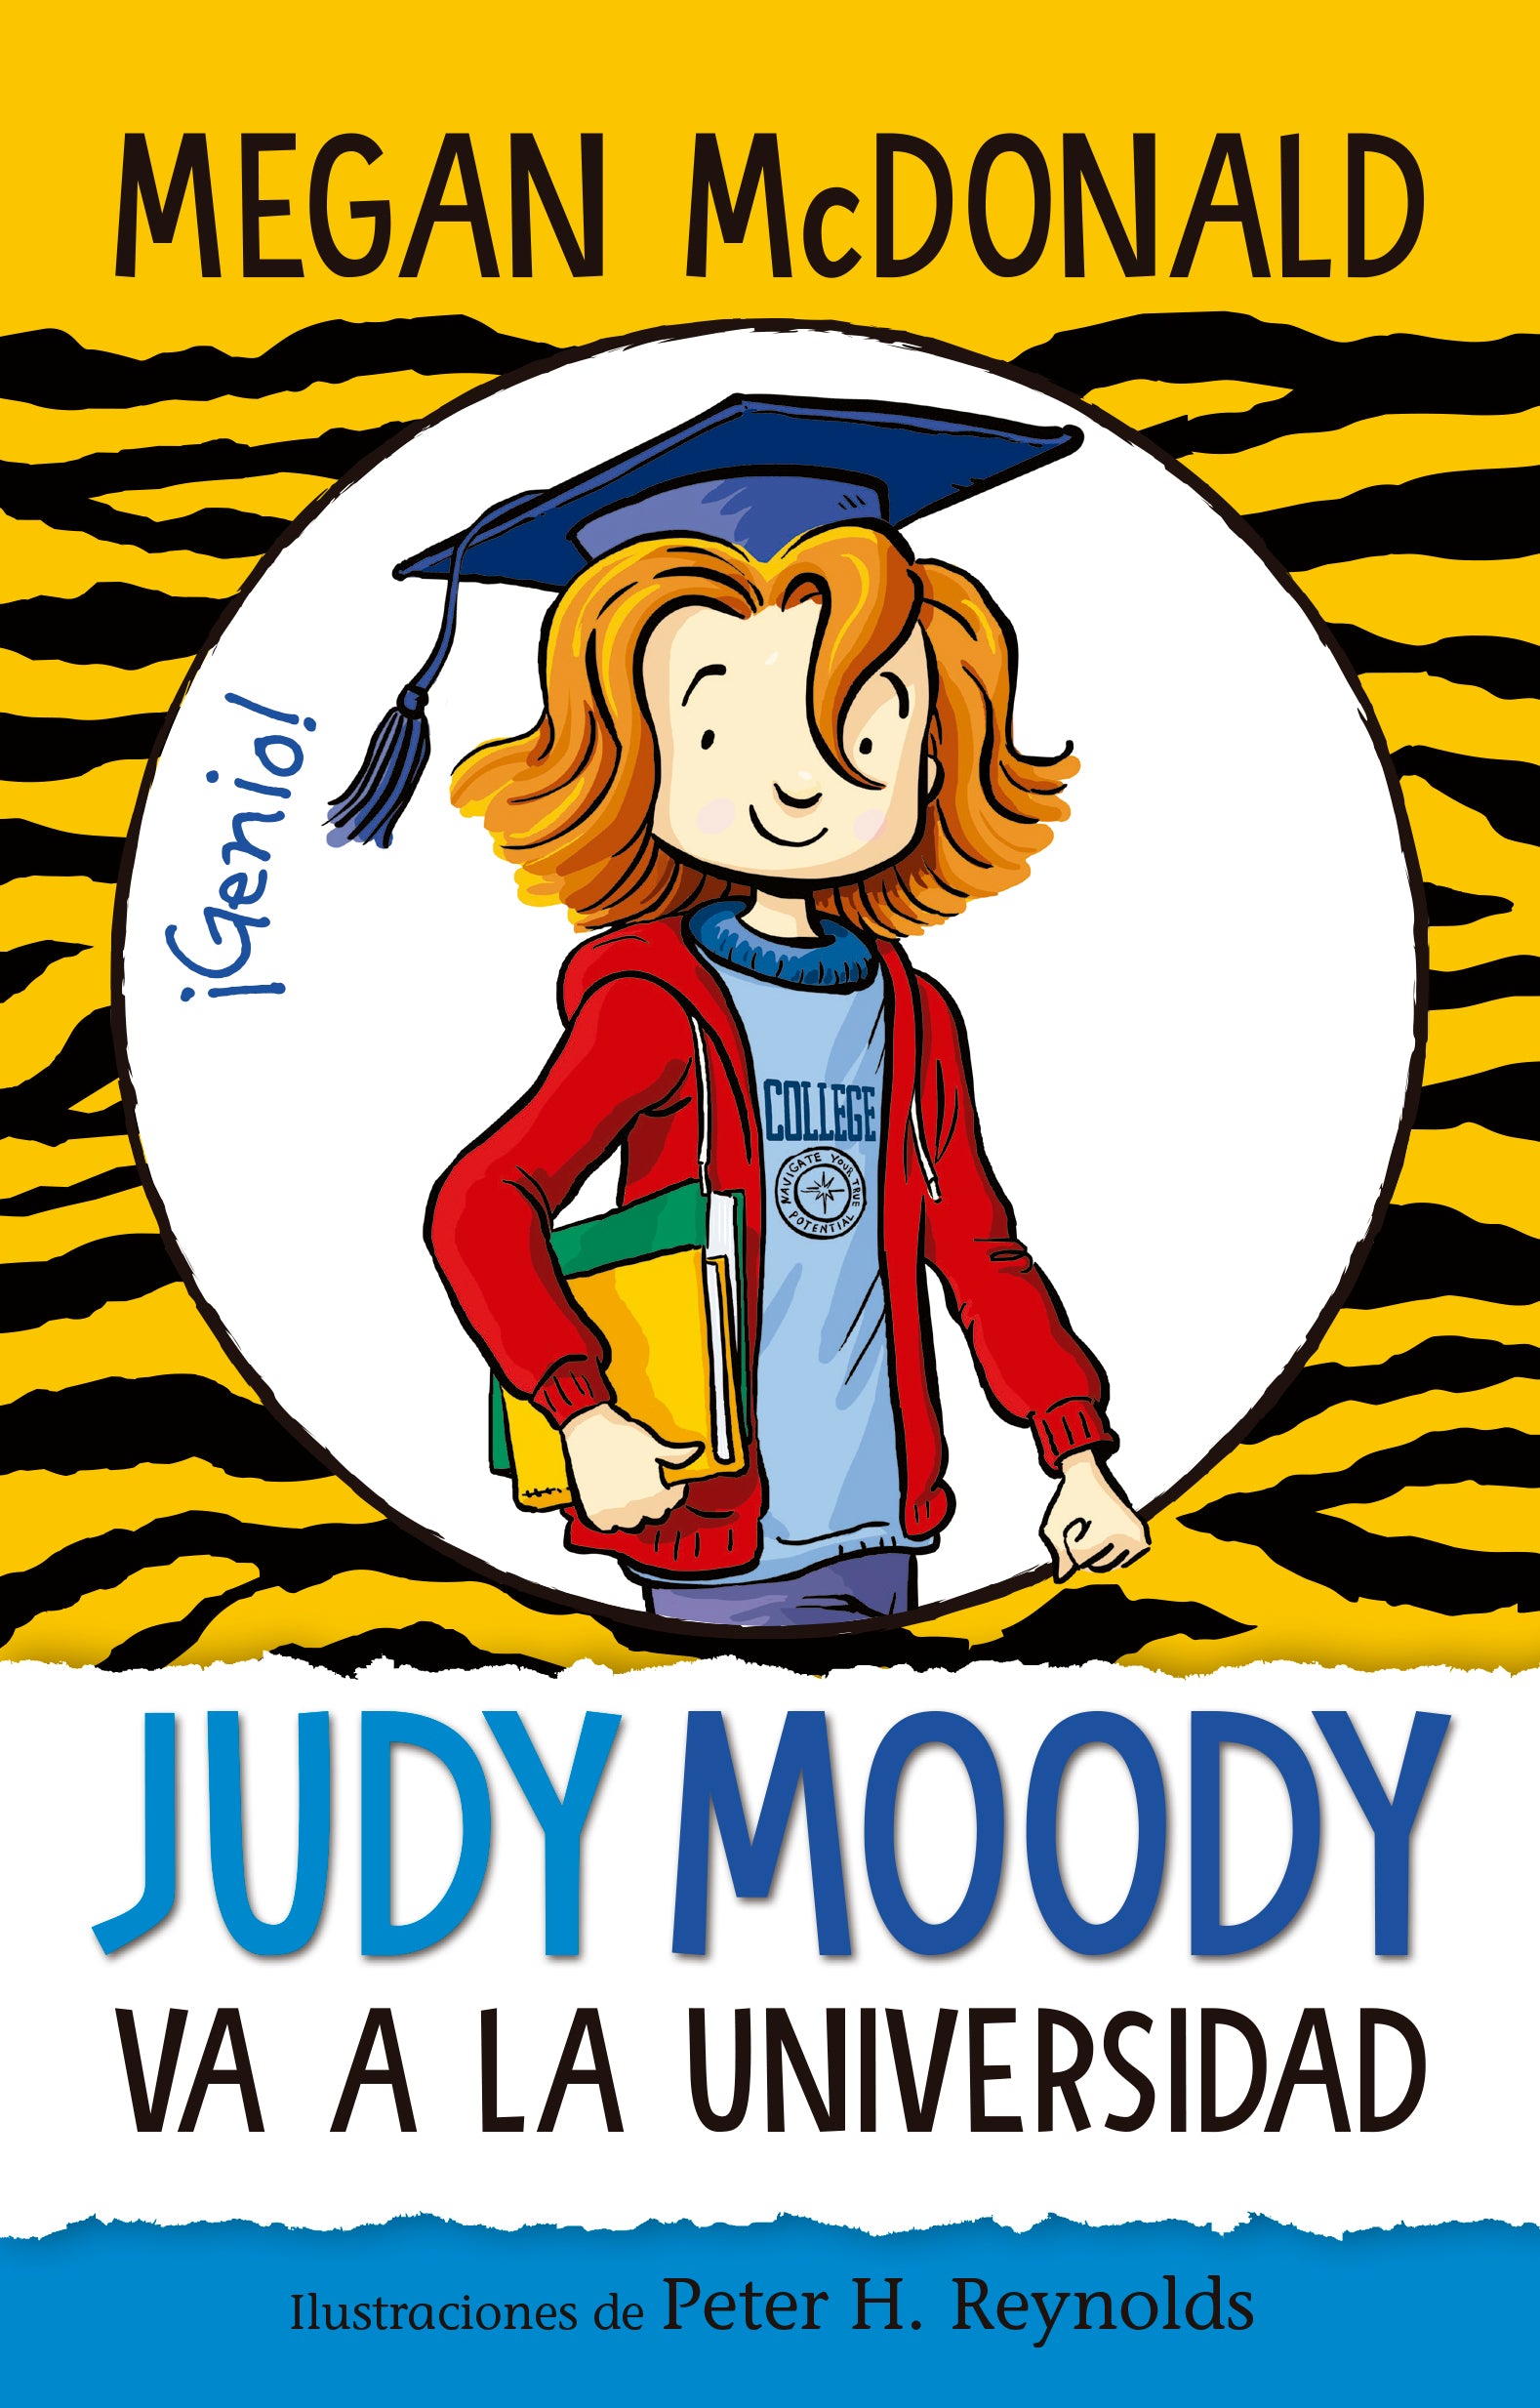 Judy Moody va a al universidad - Megan McDonald